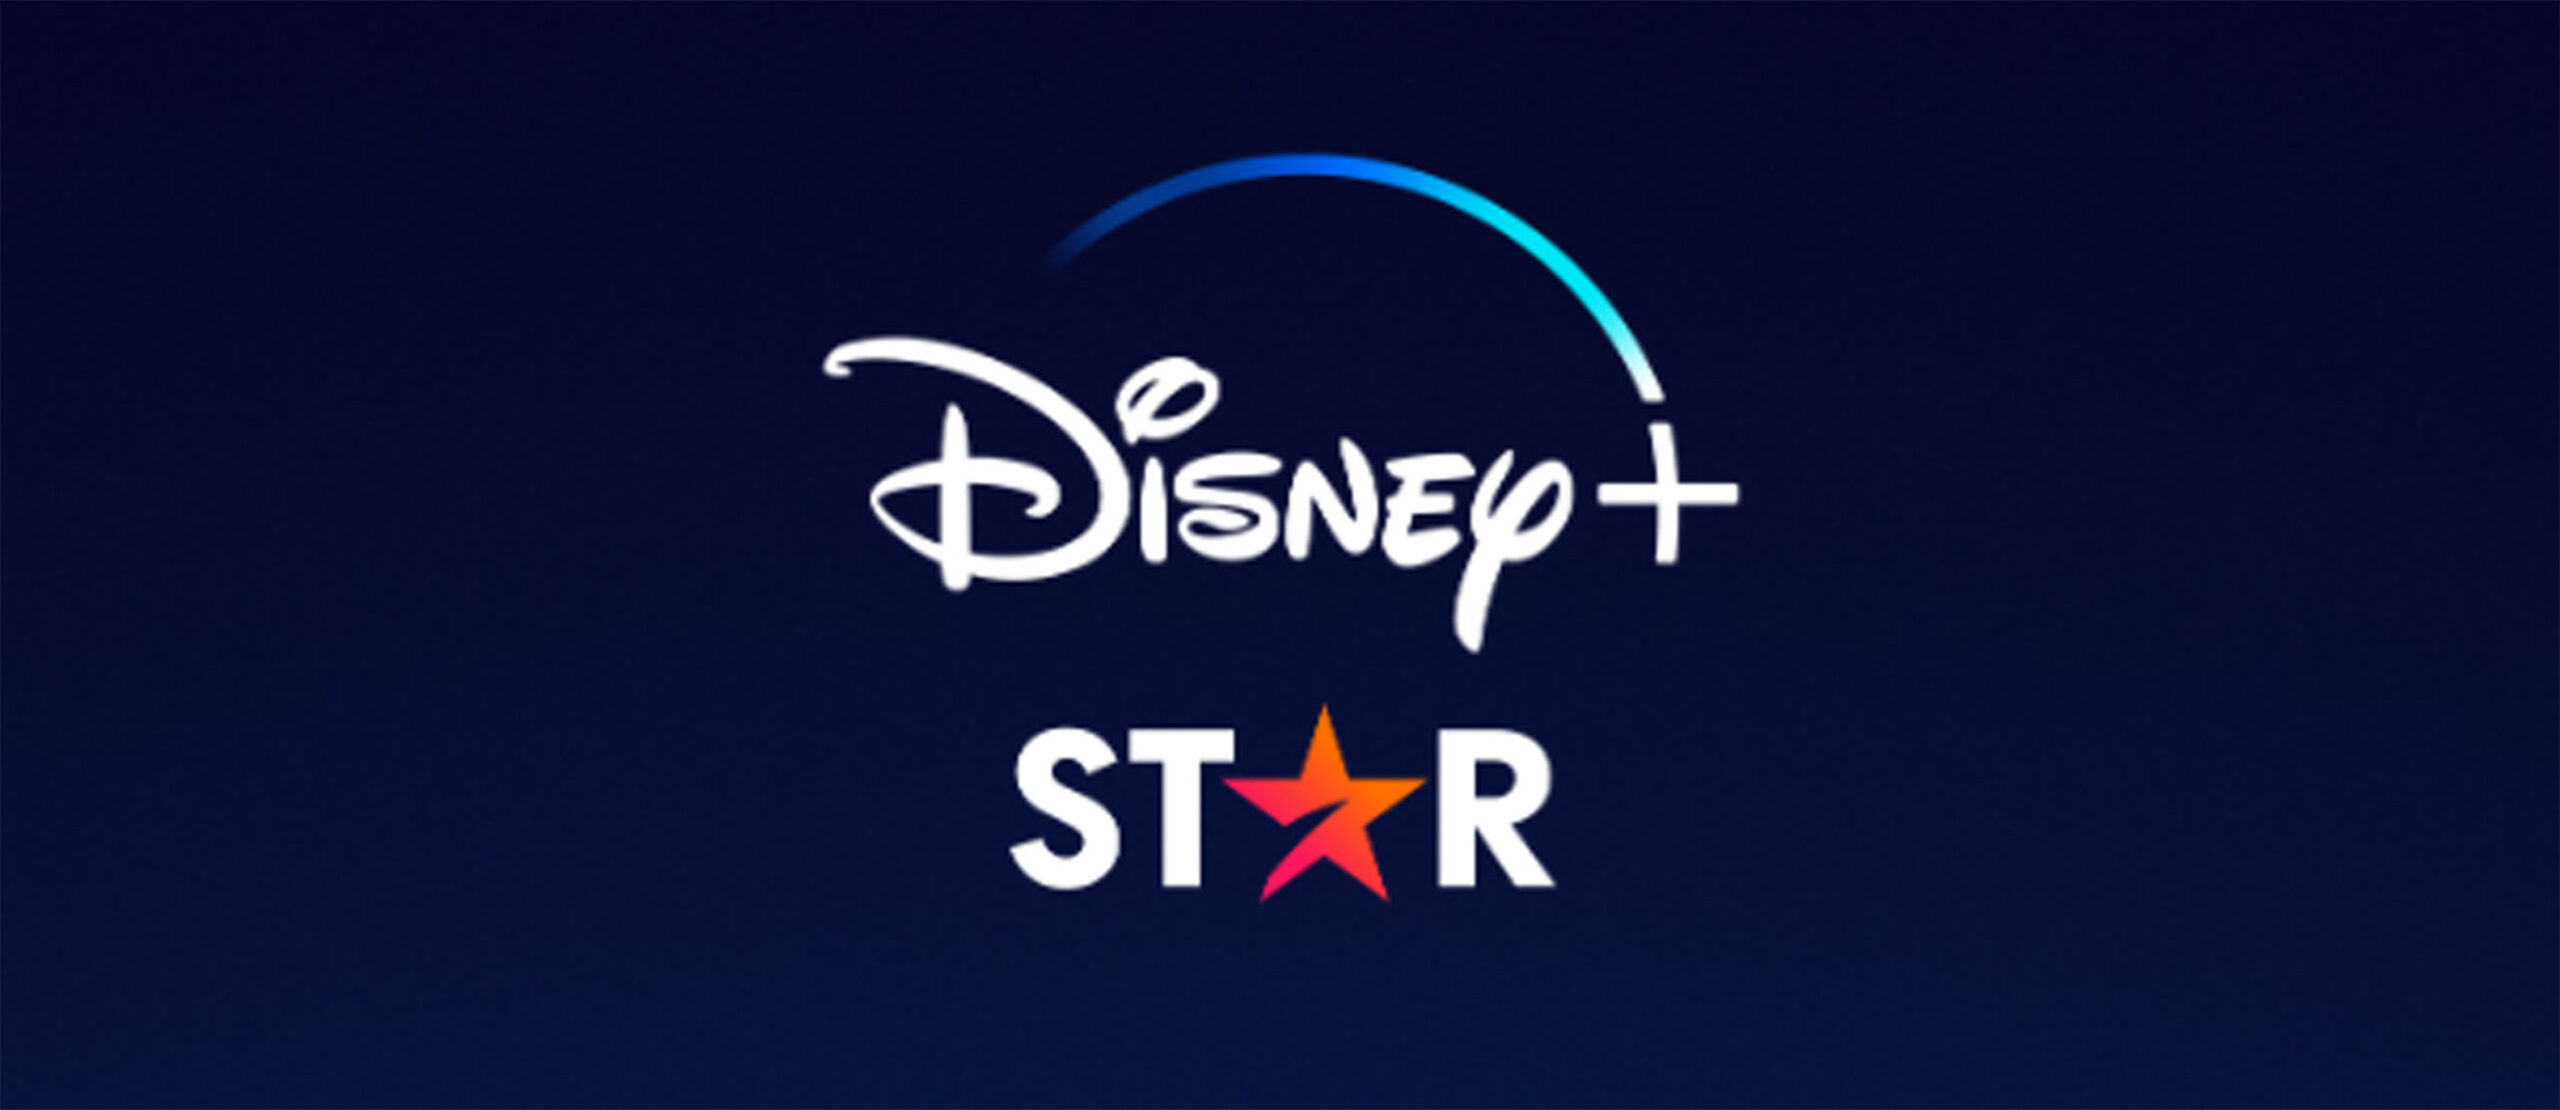 Disney nos ha presentado Star, su nueva sección y funcionalidades